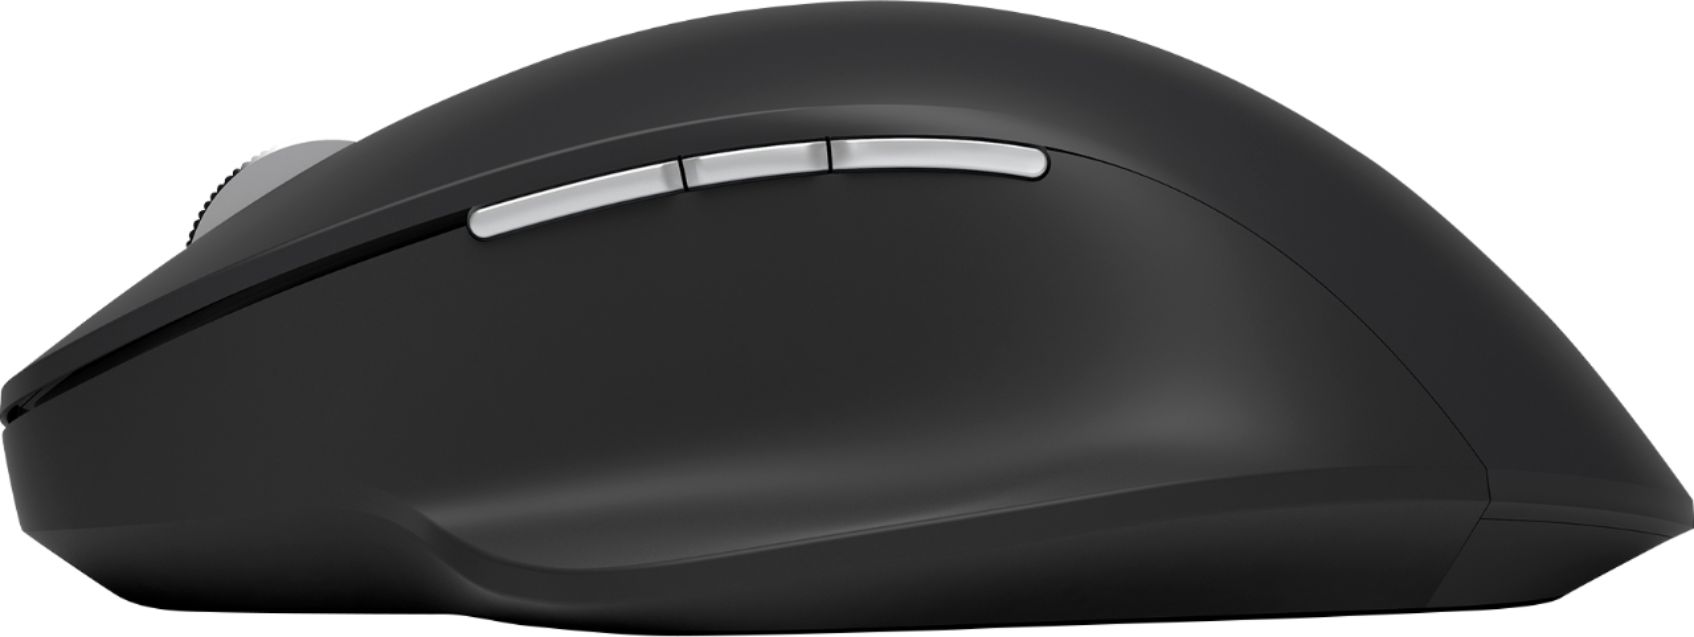 Microsoft Precision Mouse - Microsoft Accessories